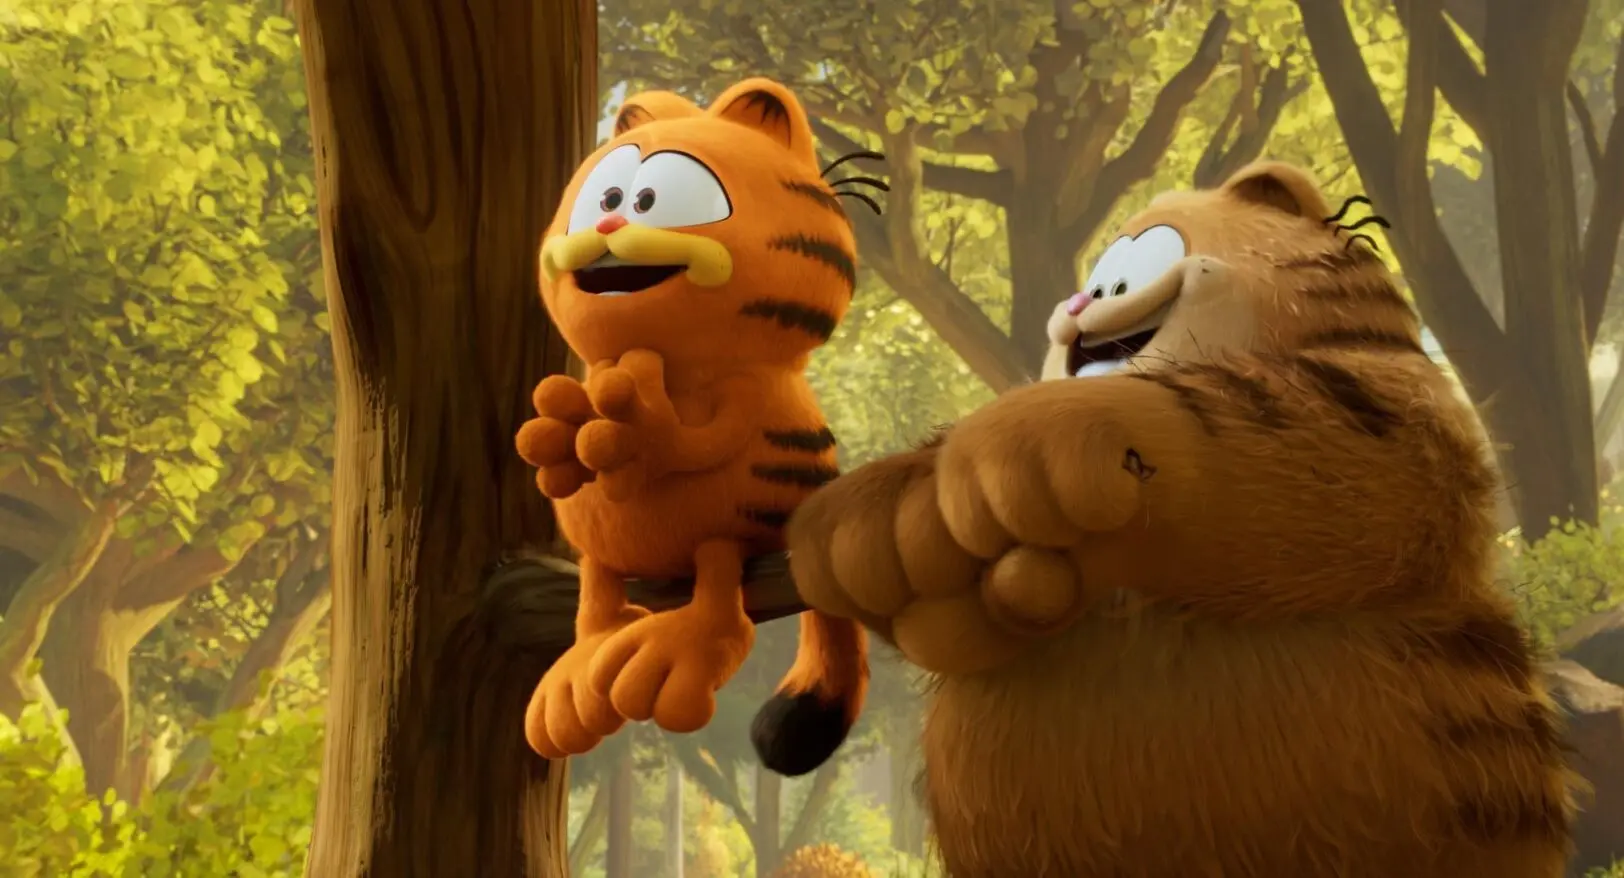 Recenze: Garfield ve filmu fanoušky cynického kocoura vyděsí. Rodičům ale poslouží dobře